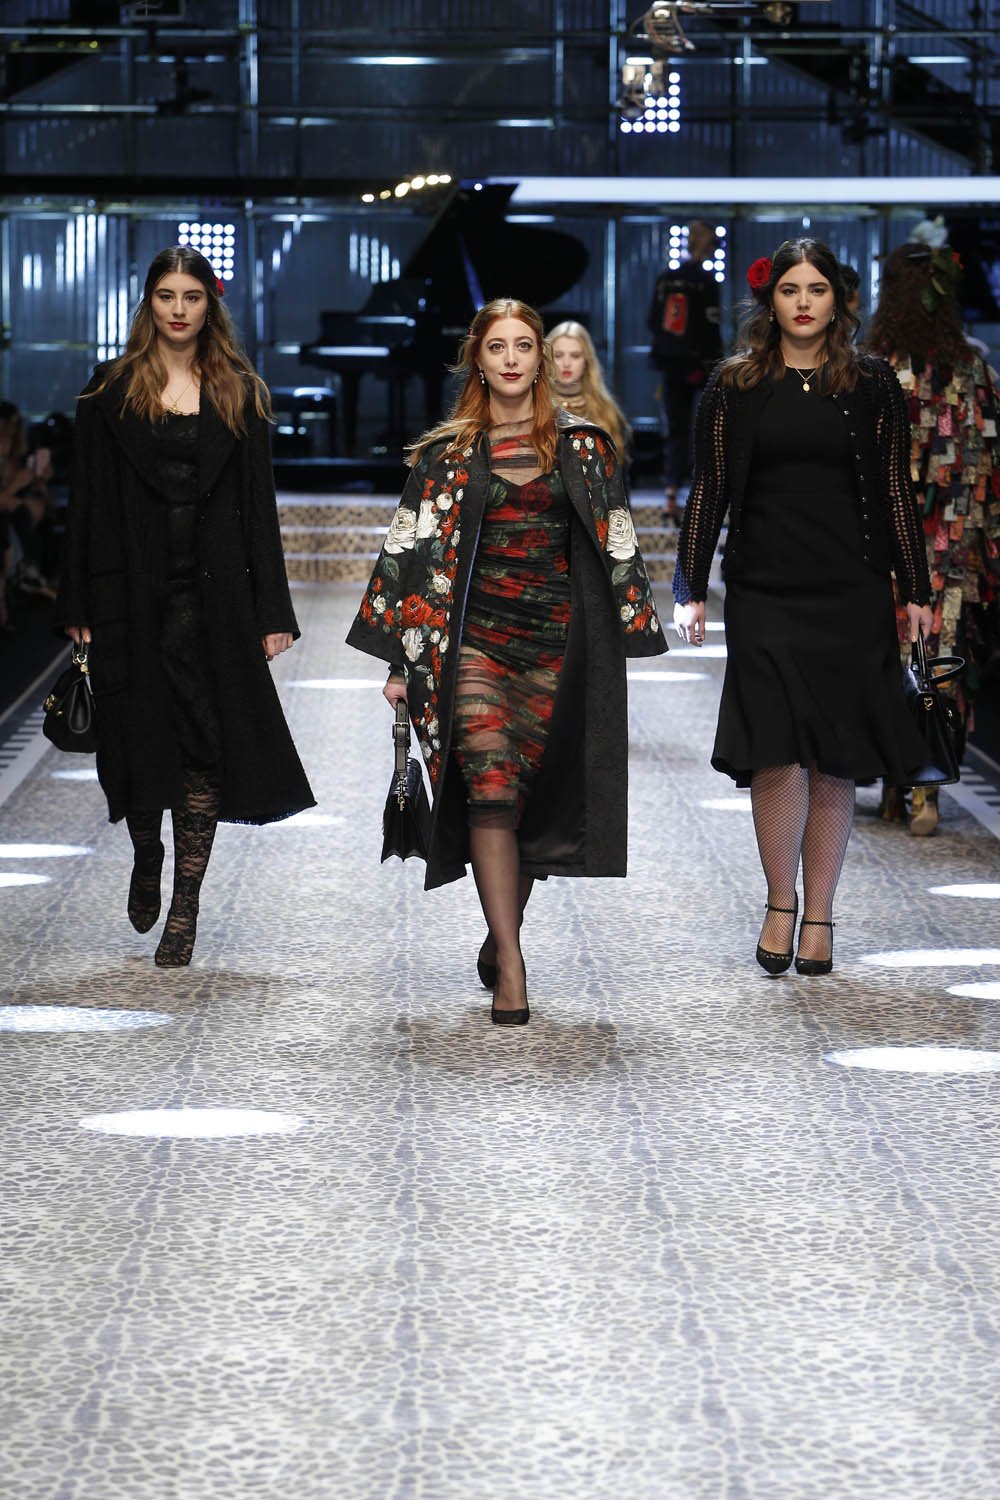 Dolce&Gabbana_women's fashion show fw17-18_Runway_images (26)